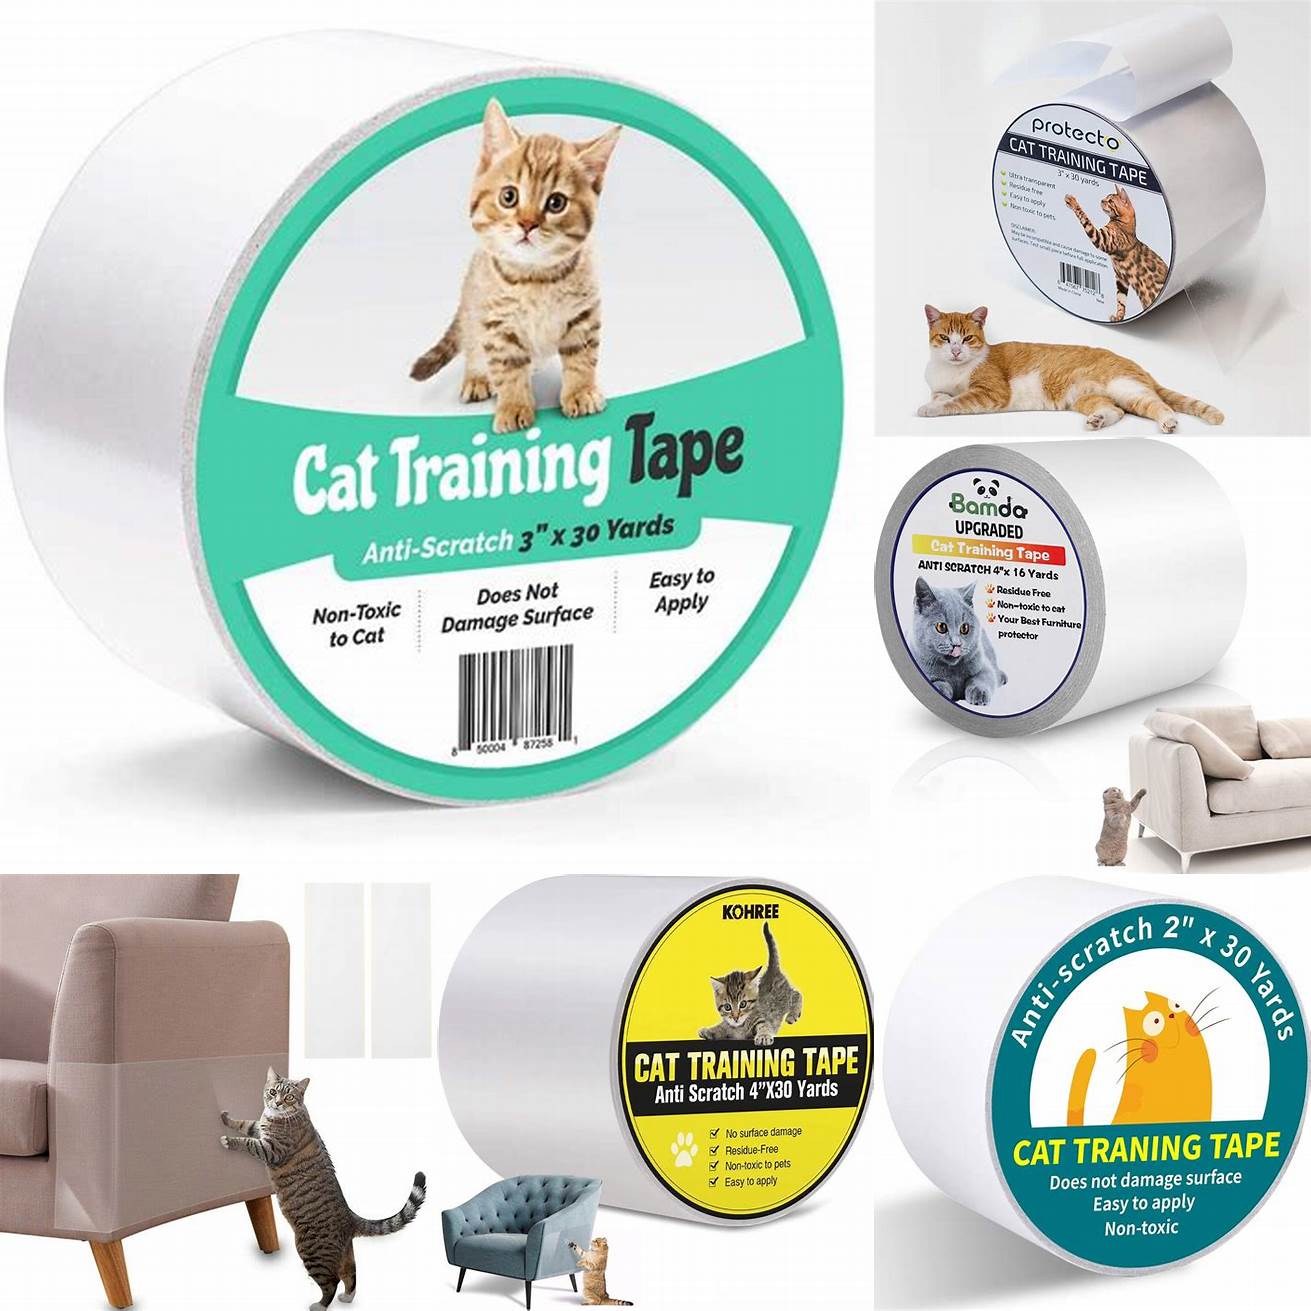 Cat anti-scratch tape is effective